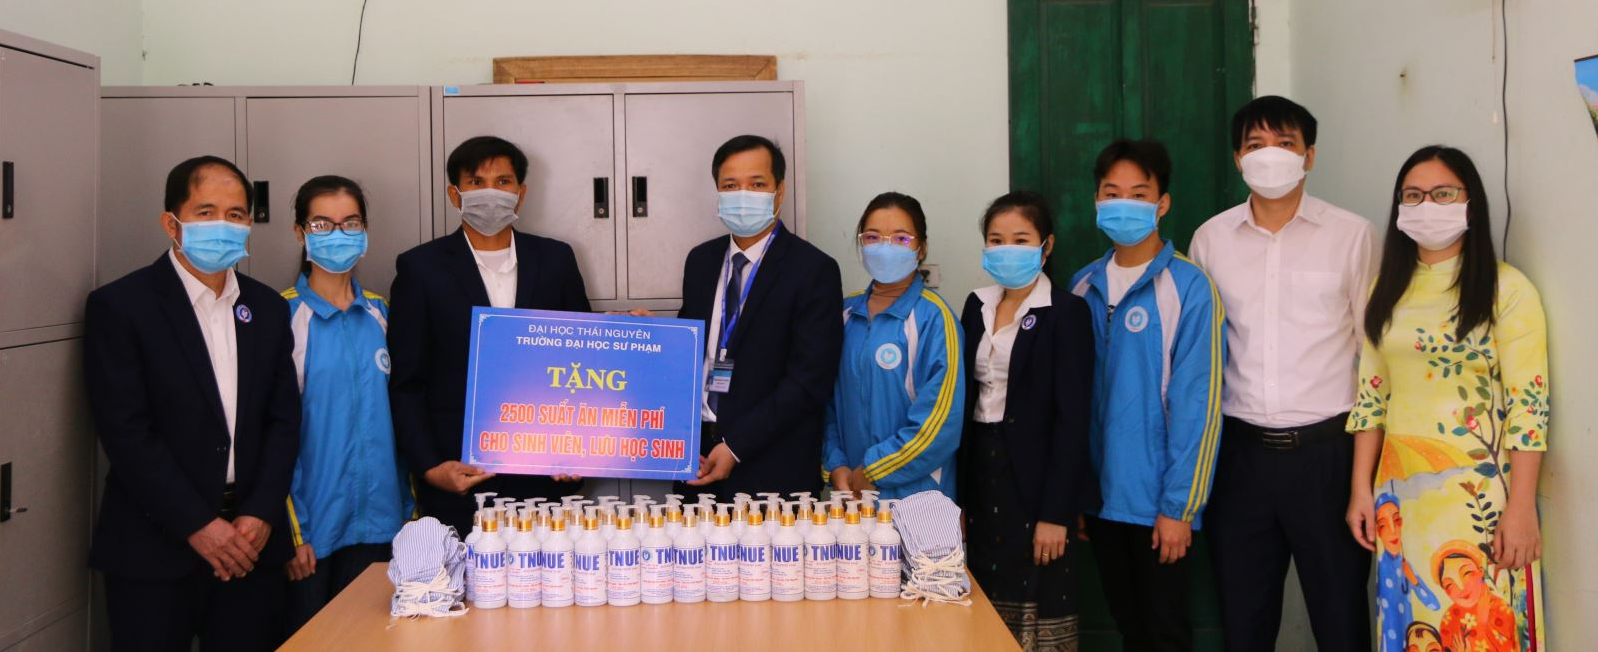 Trường Đại học Sư phạm – Đại học Thái Nguyên trao tặng “Suất ăn yêu thương” cho sinh viên và lưu học sinh Lào đang lưu trú tại kí túc xá của Trường